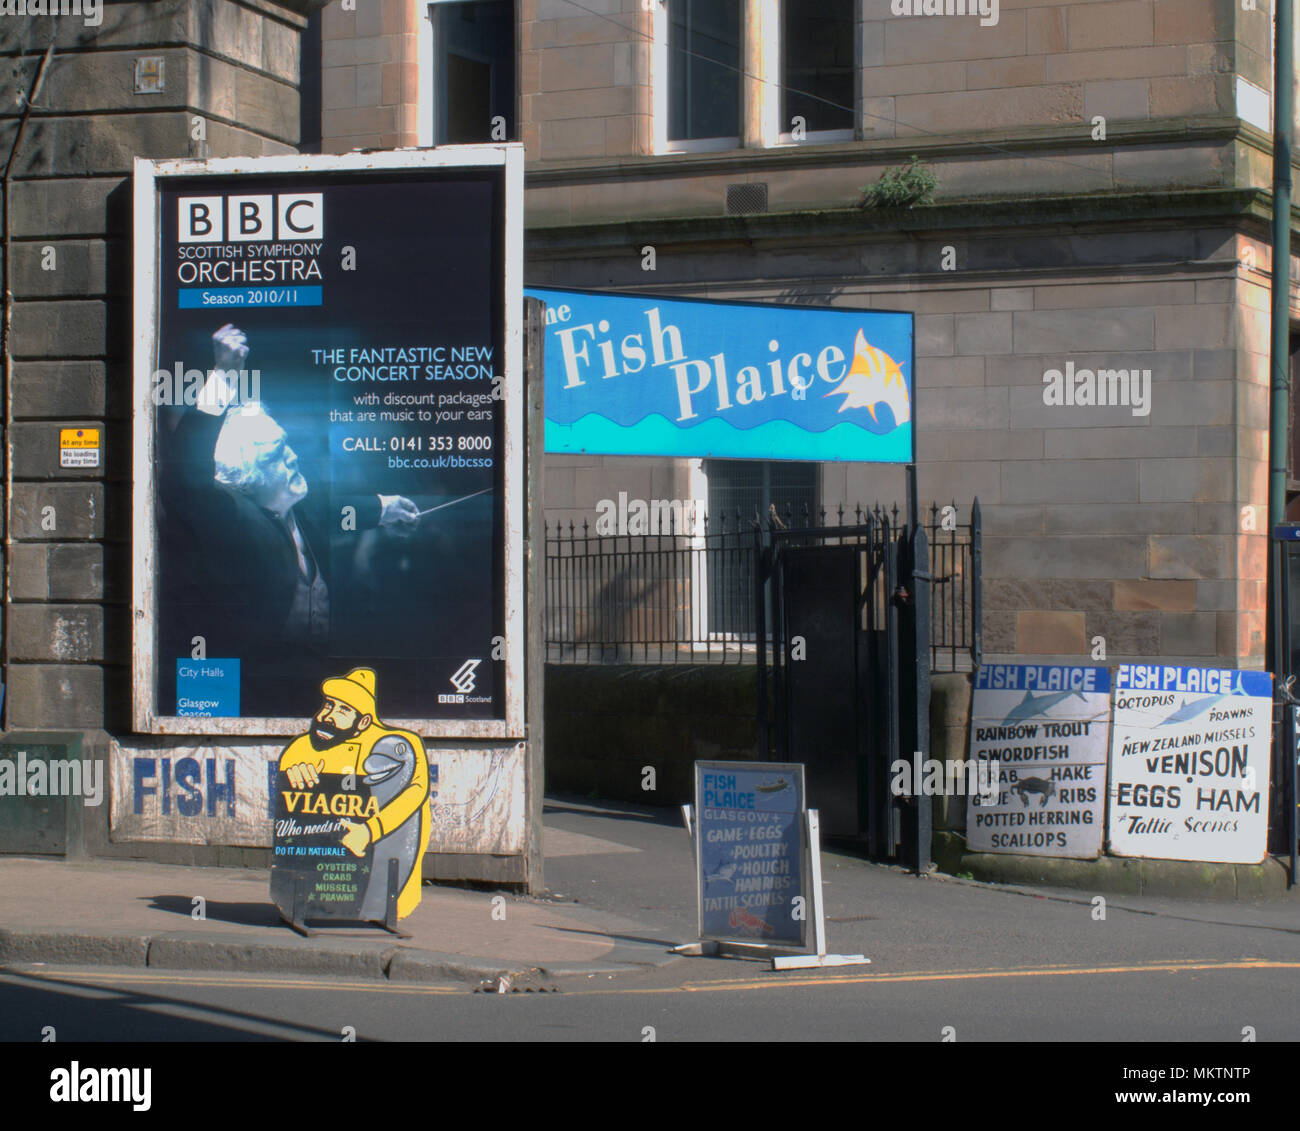 Le poisson plie saltmarket glasgow BBC Scottish Symphony Orchestra nouvelle saison annonce Viagra mer personne ne signe copyspace Banque D'Images